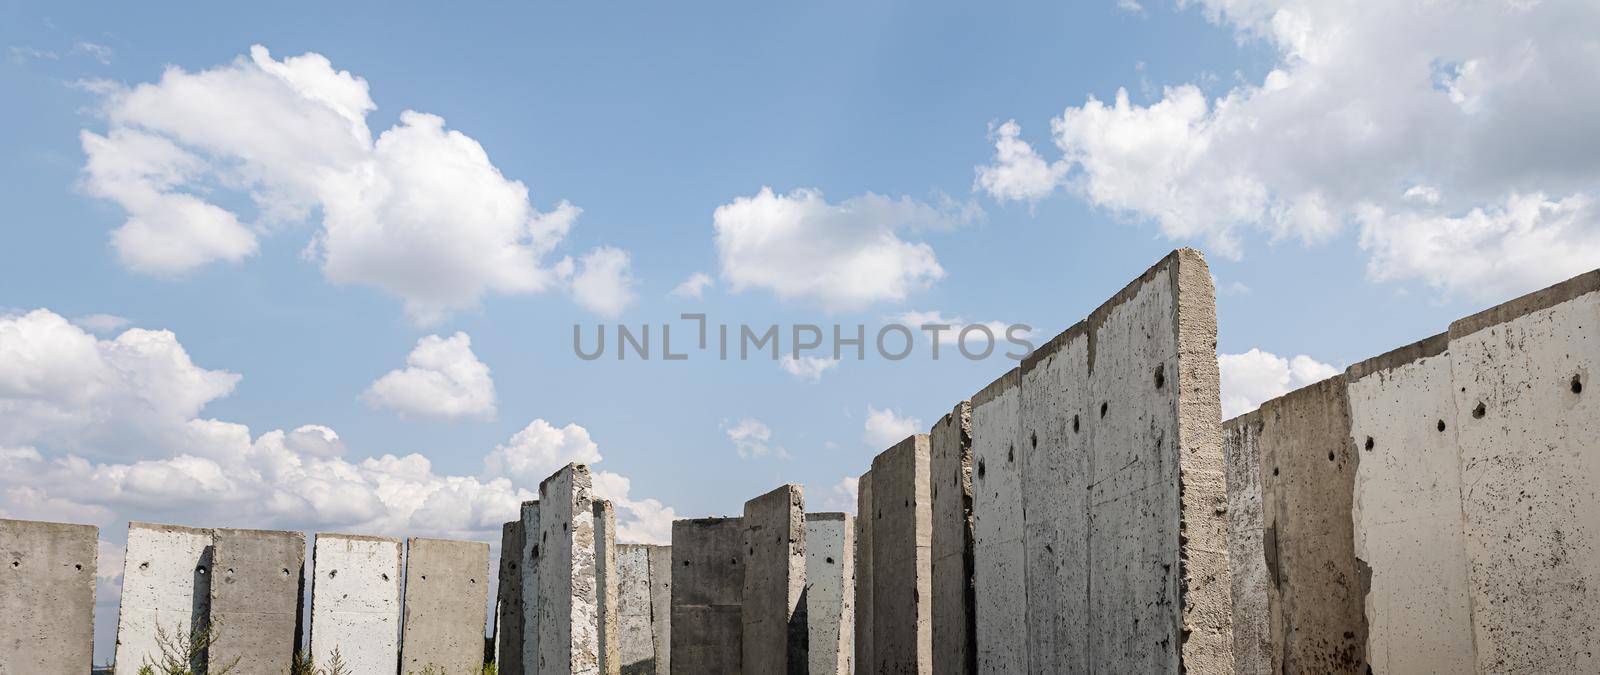 Concrete slabs in the field by palinchak